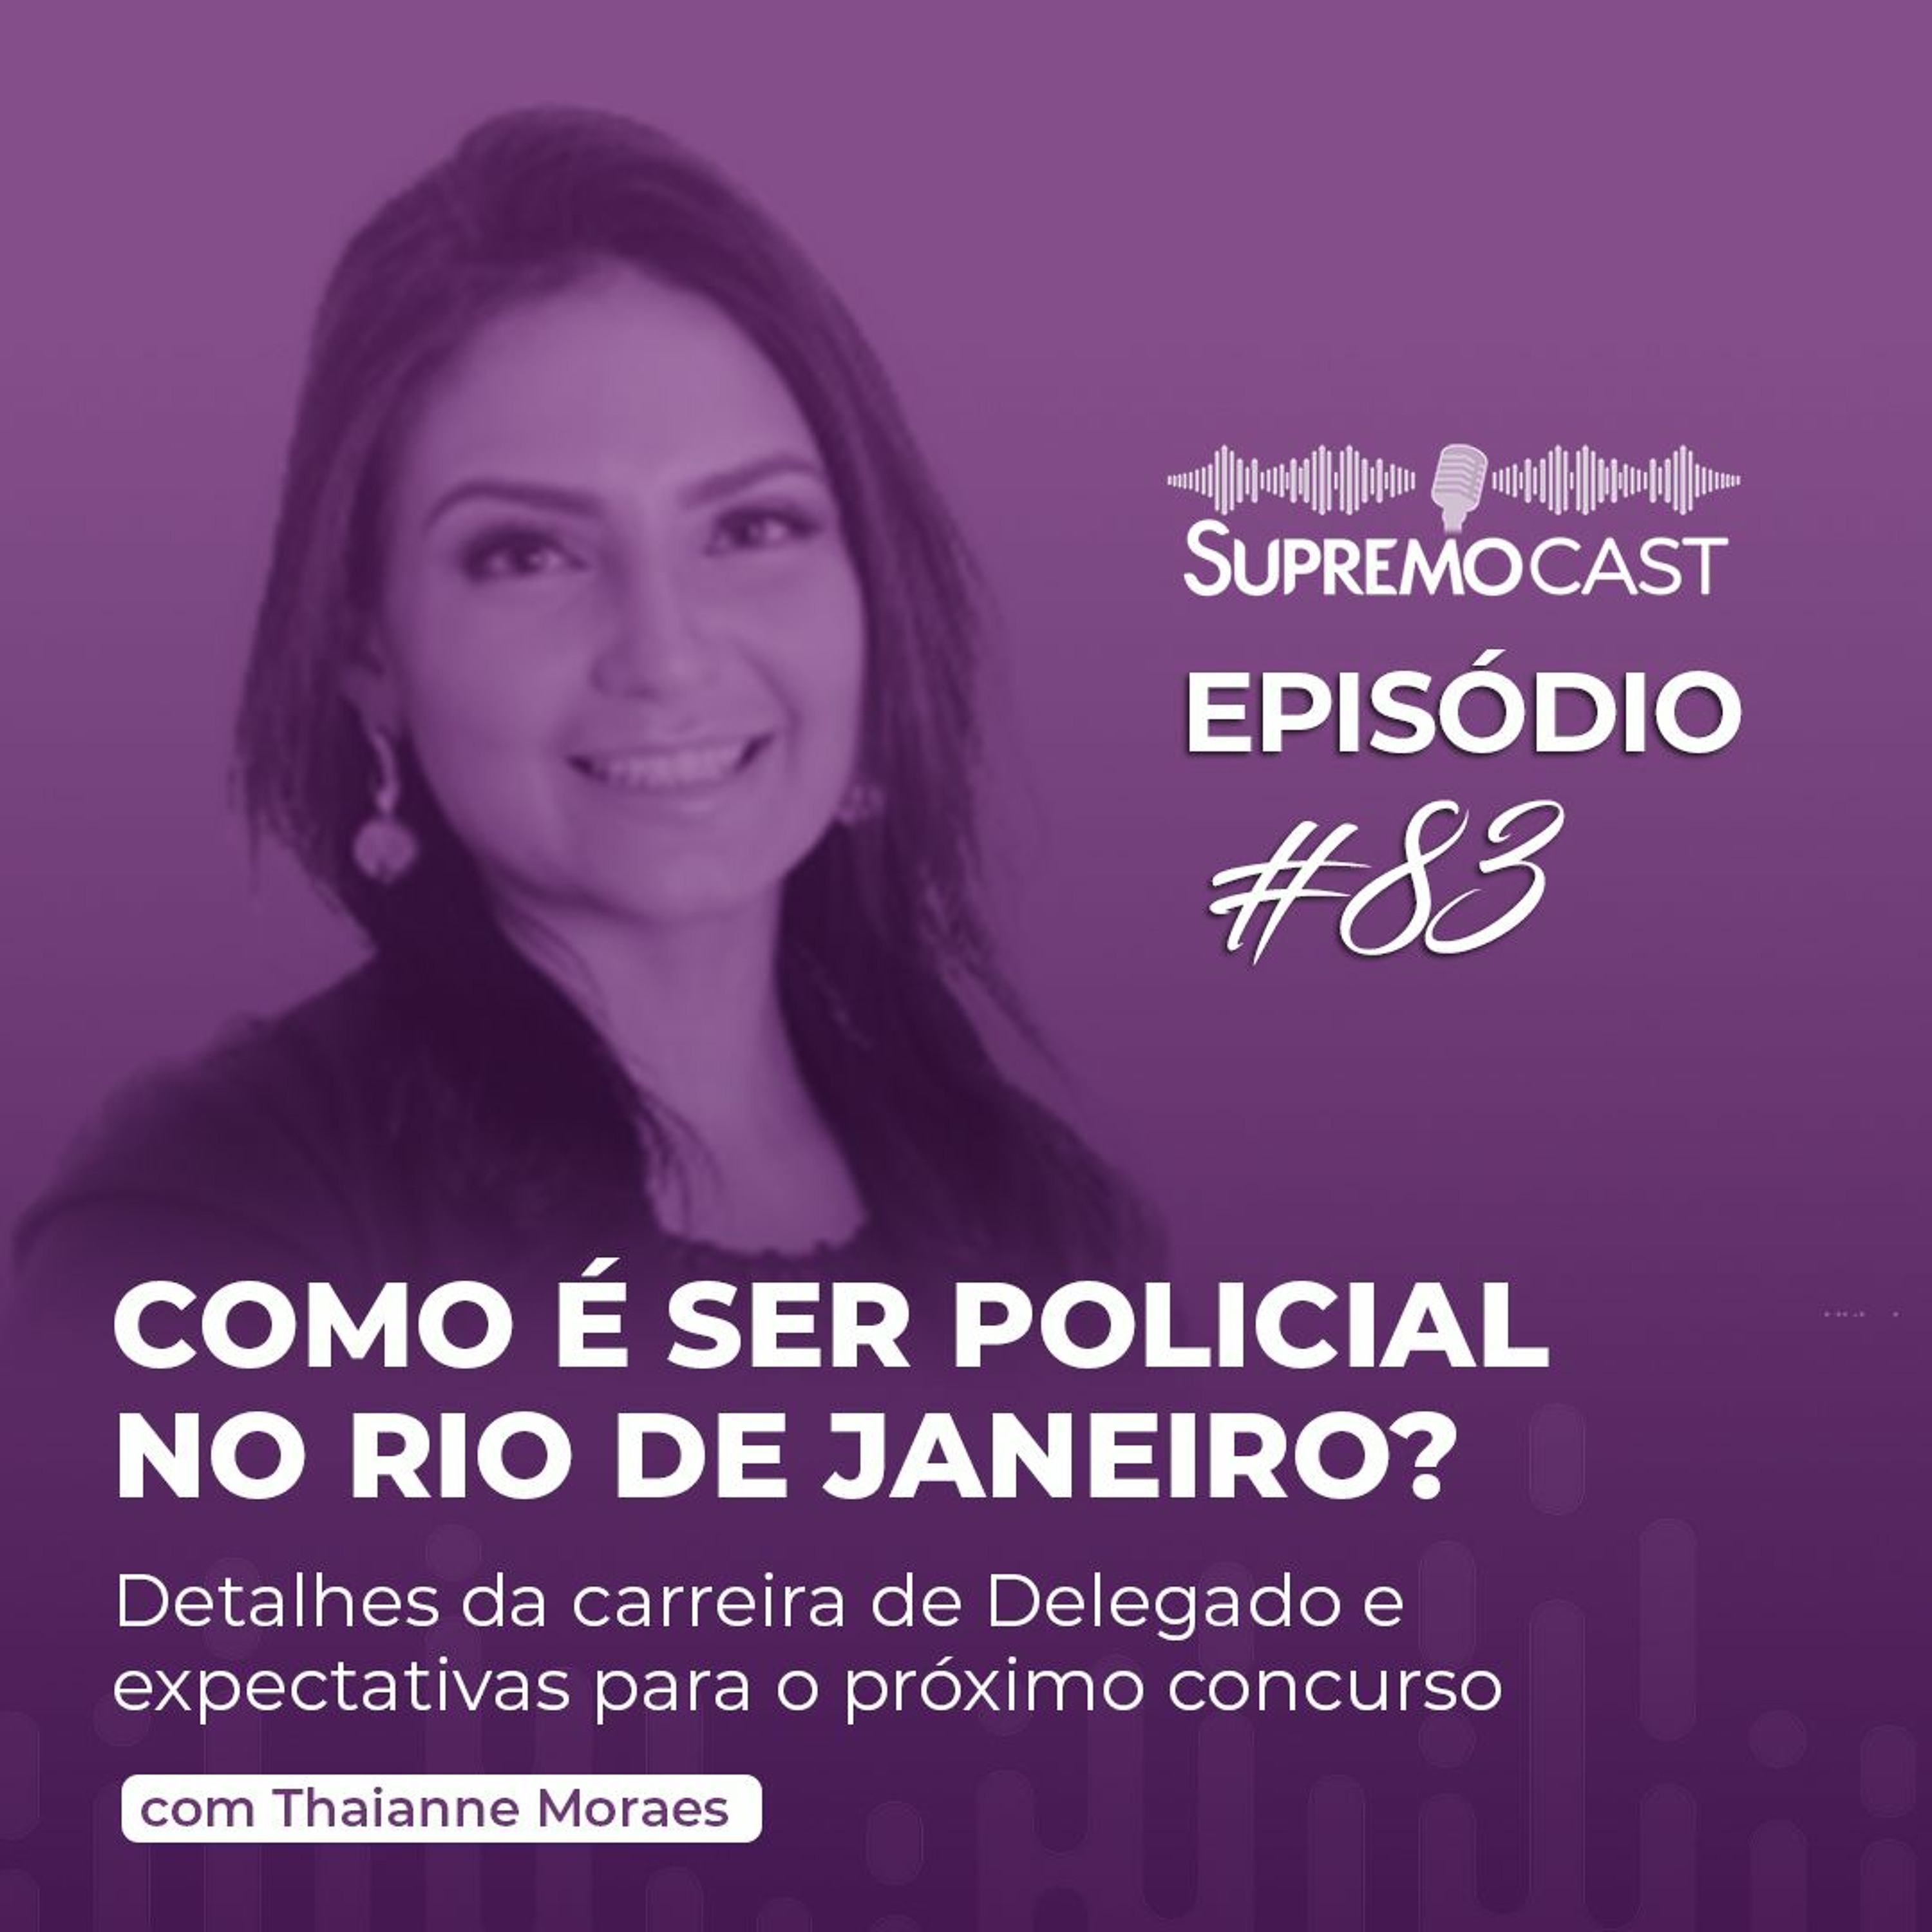 #83 - COMO É SER POLICIAL NO RIO DE JANEIRO?